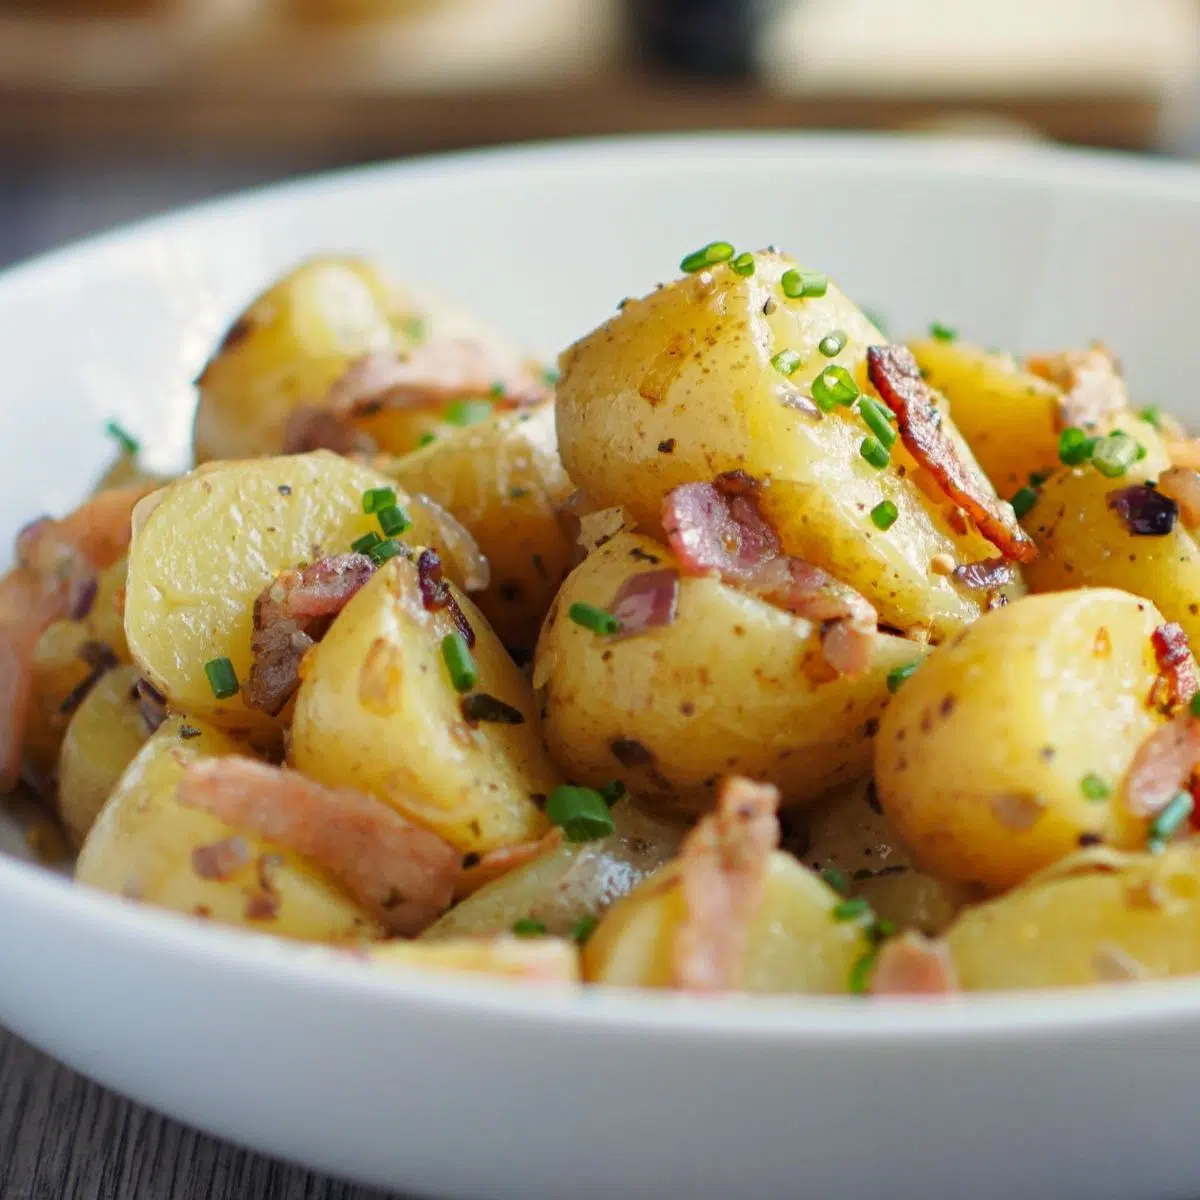 Квадратное изображение немецкого картофельного салата в белой миске.